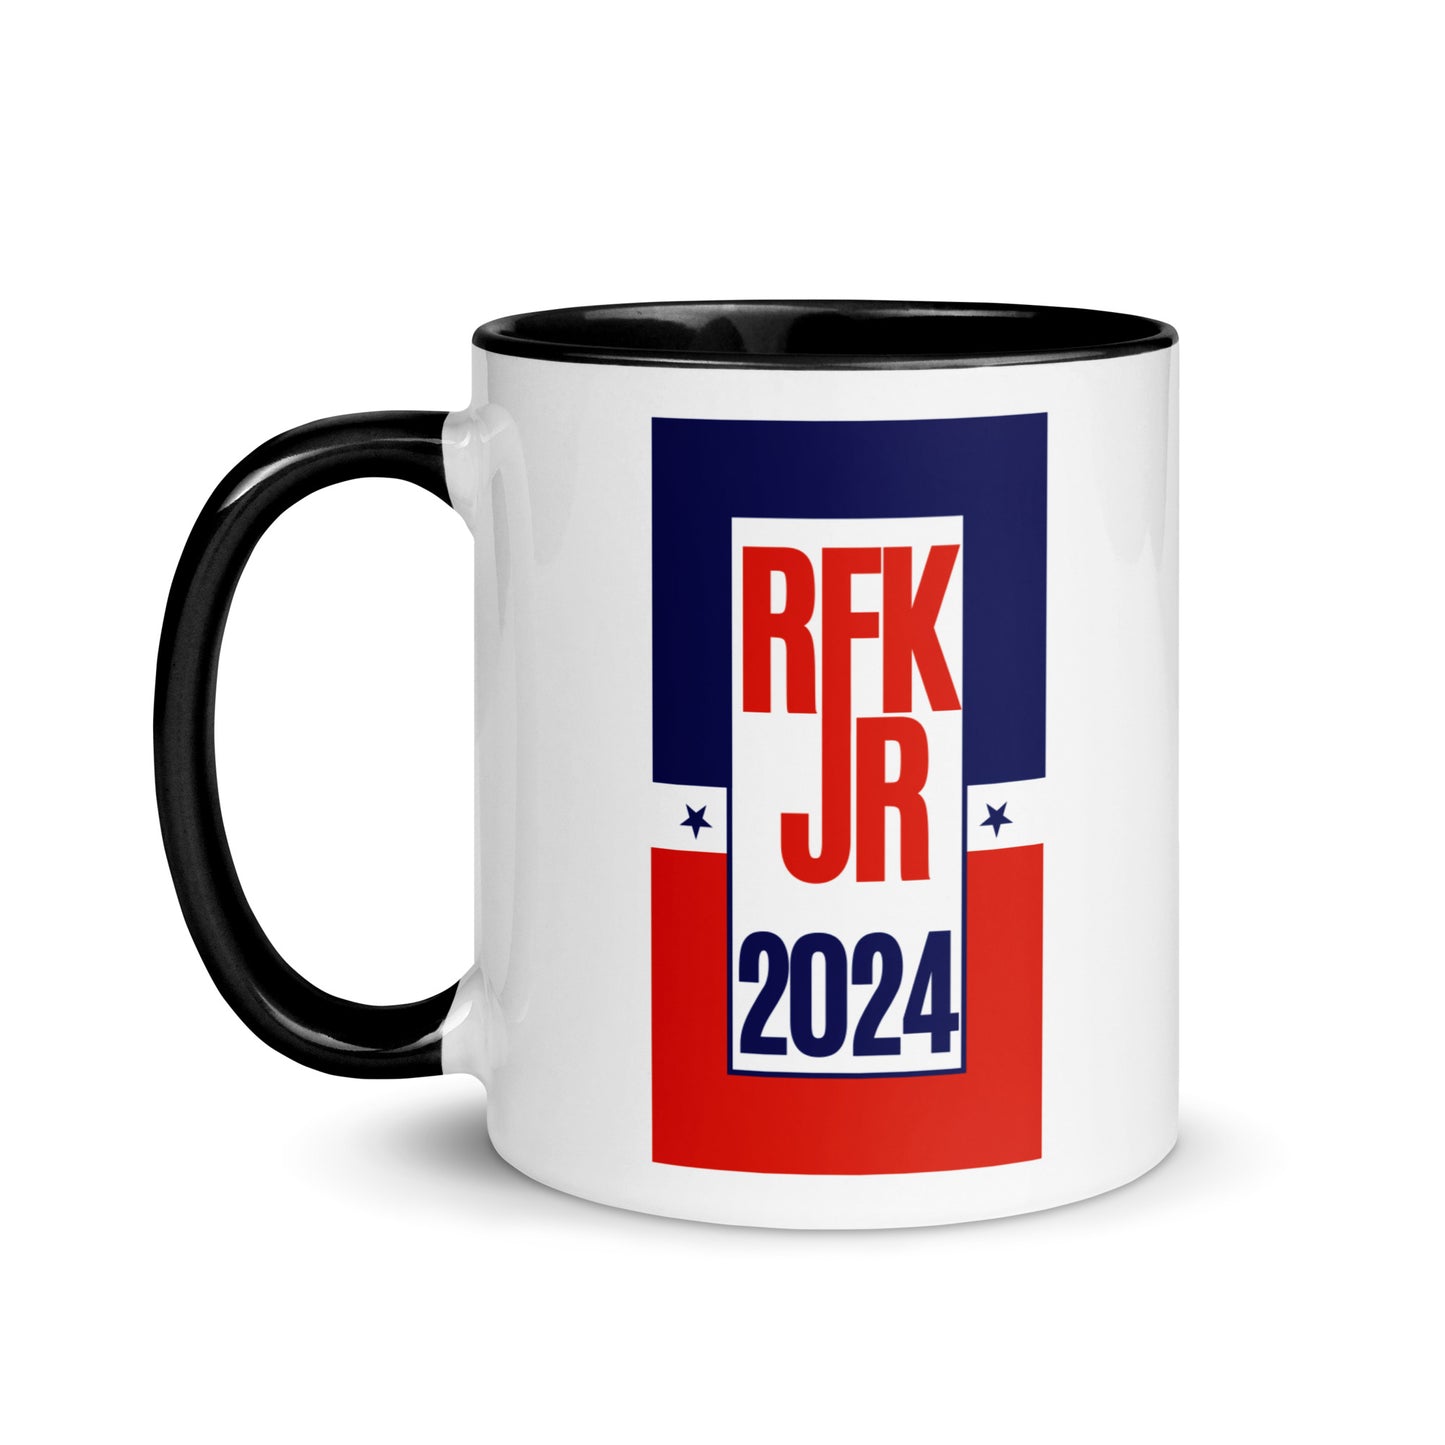 Retro RFK Jr. 2024 Mug